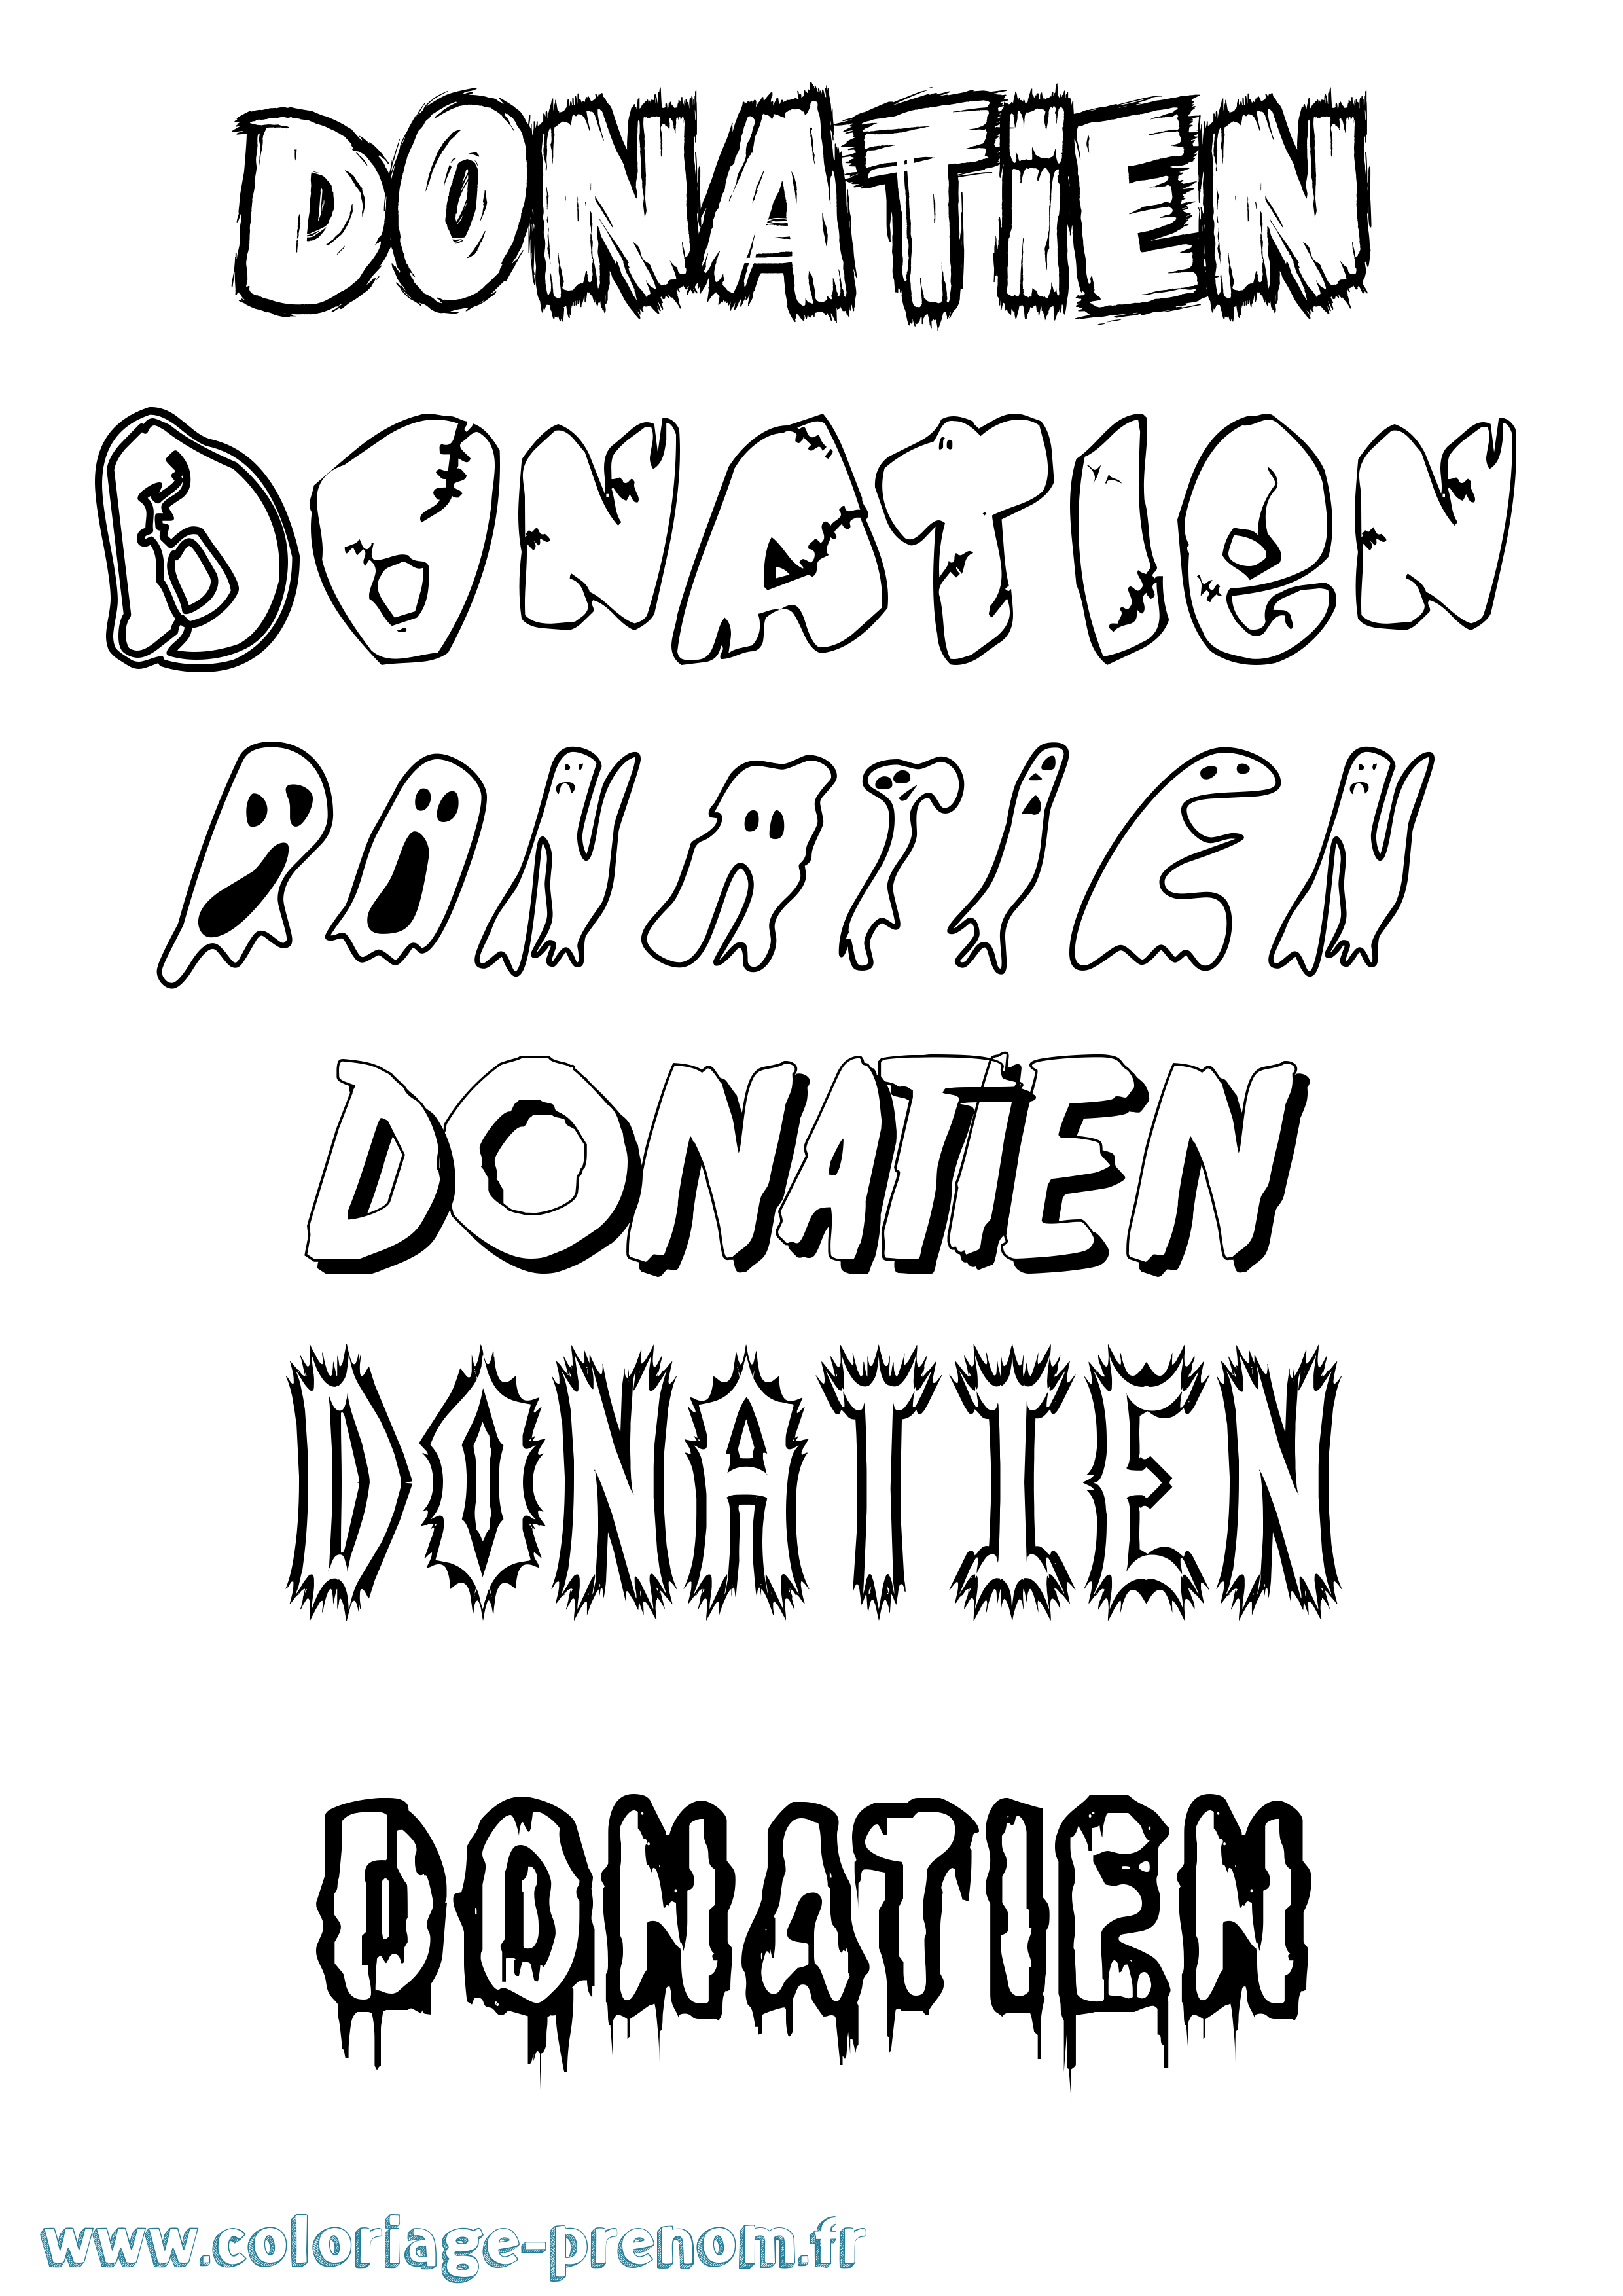 Coloriage prénom Donatien Frisson